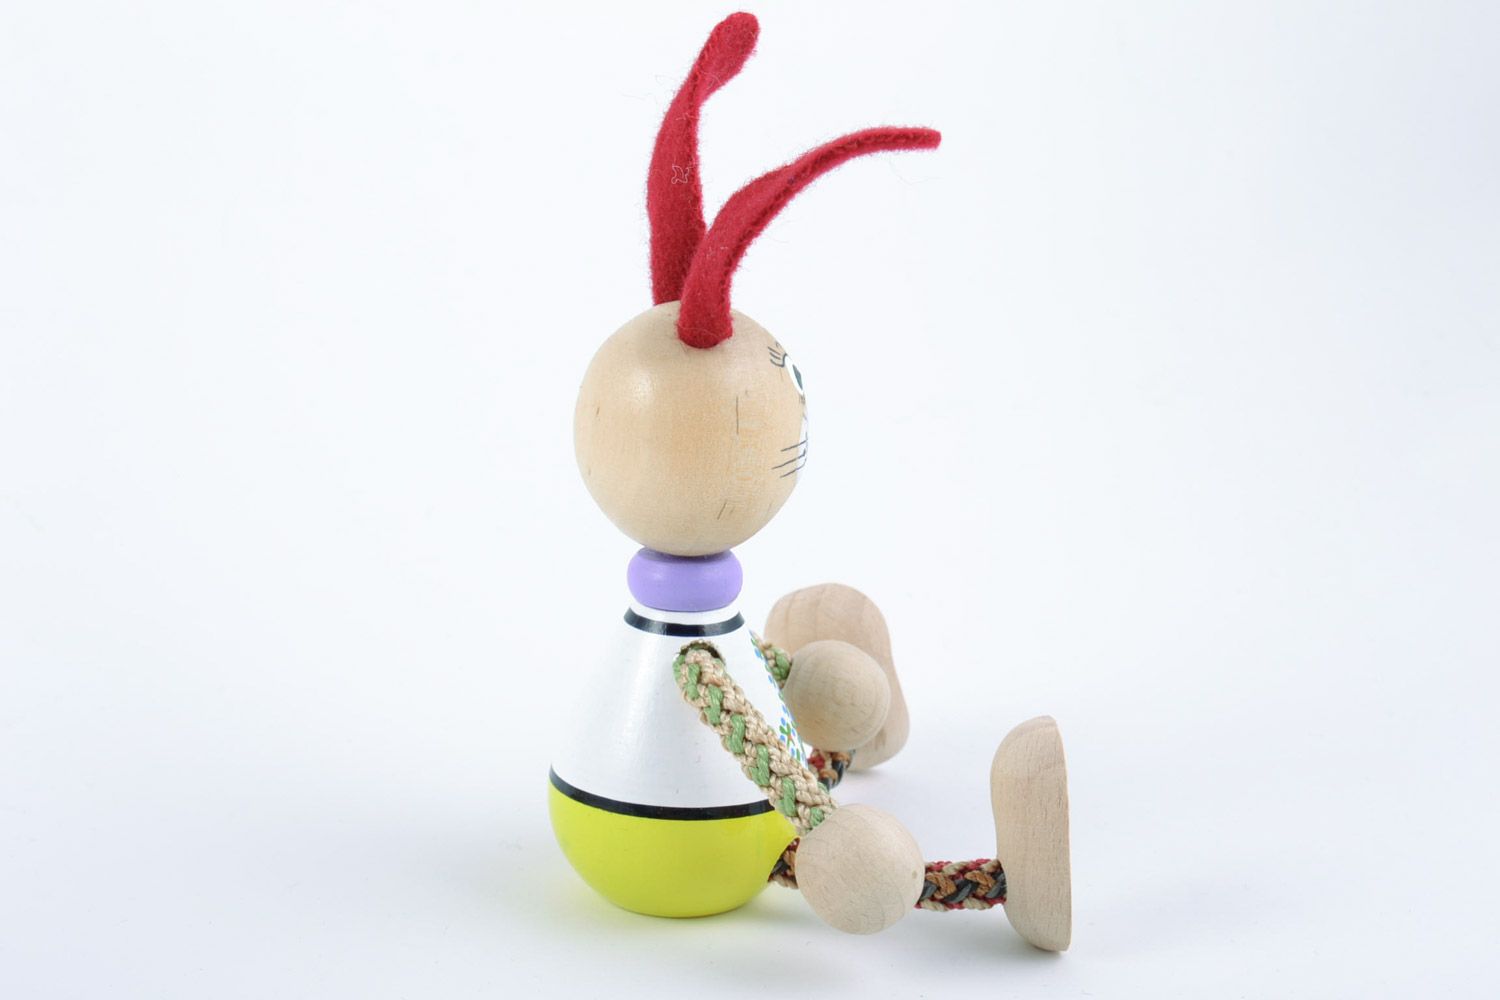 Juguete de madera hecho a mano pintado ecológico liebre con patas de cordones foto 4